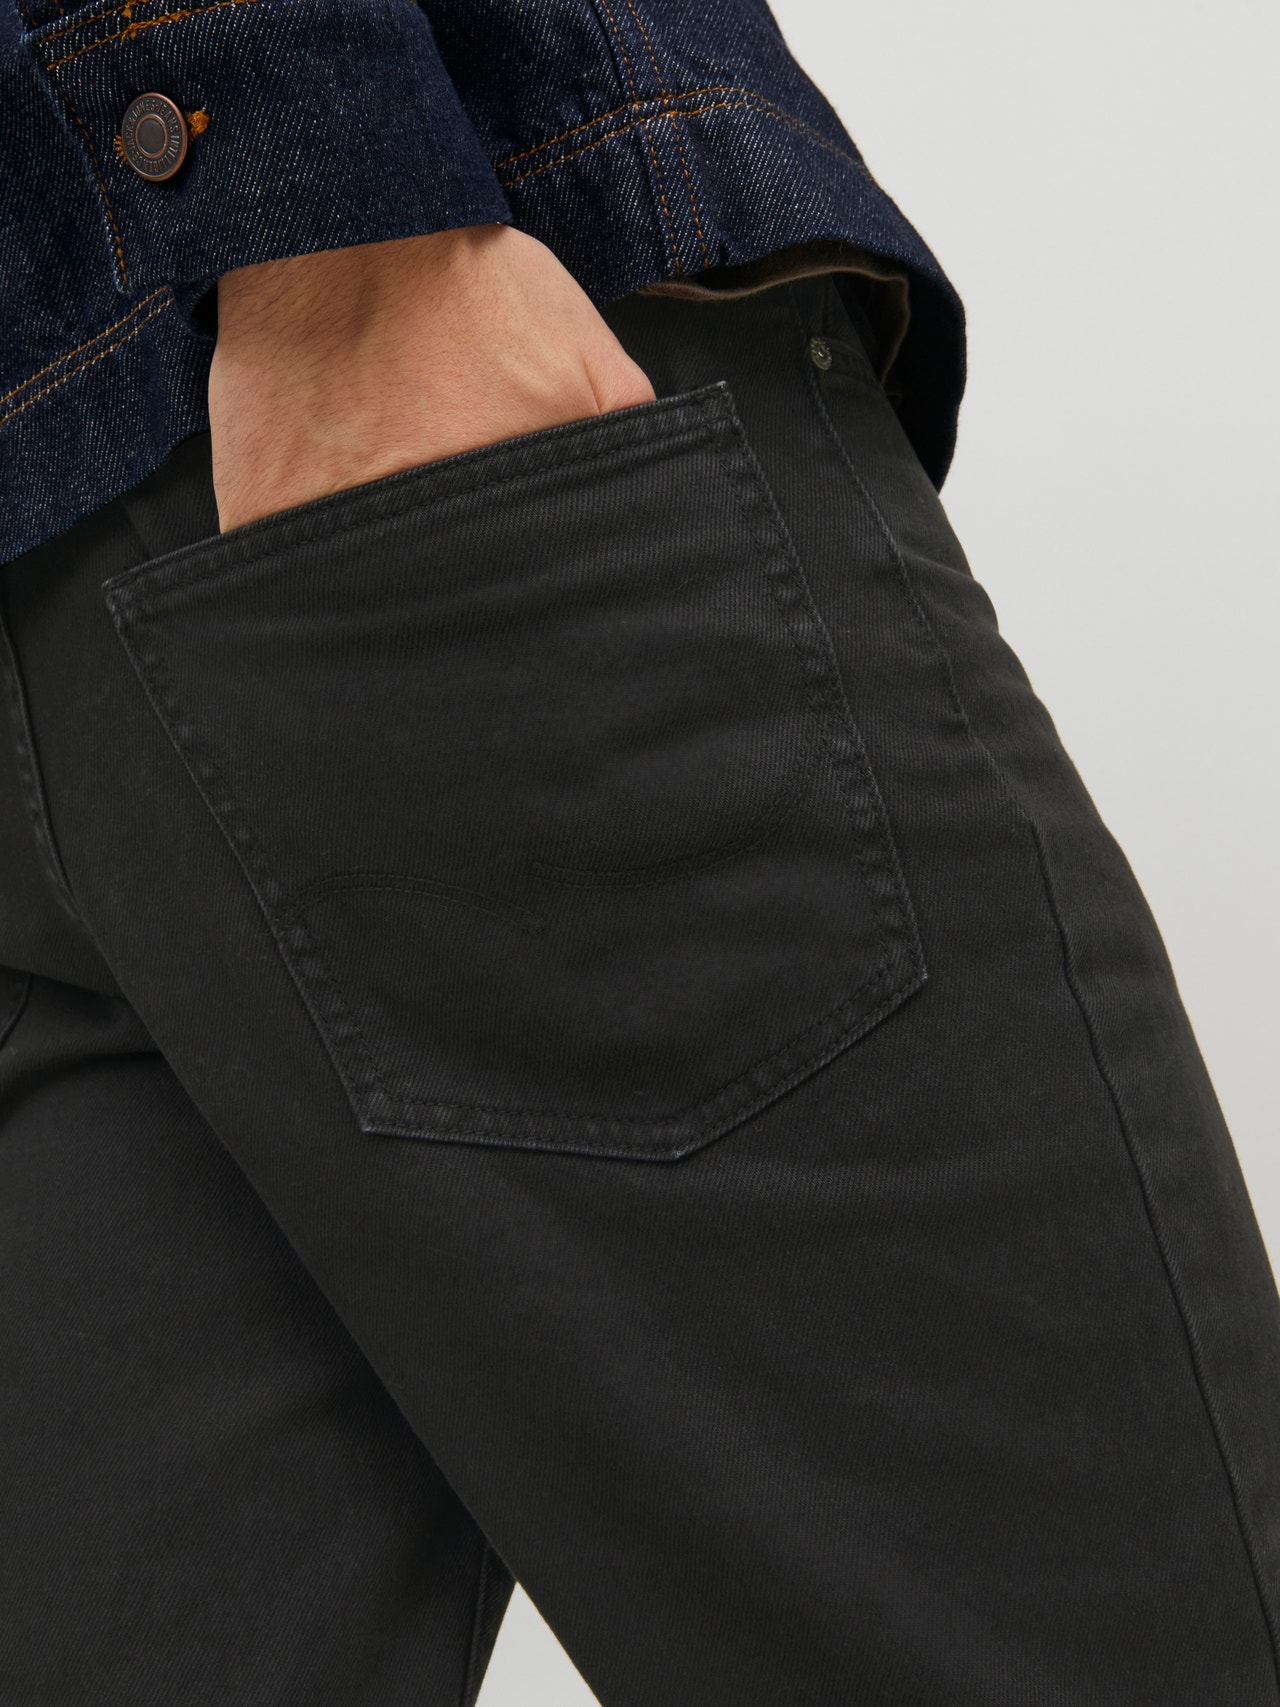 Jack & Jones Pantalon 5 poches Regular Fit -Tap Shoe - 12216976